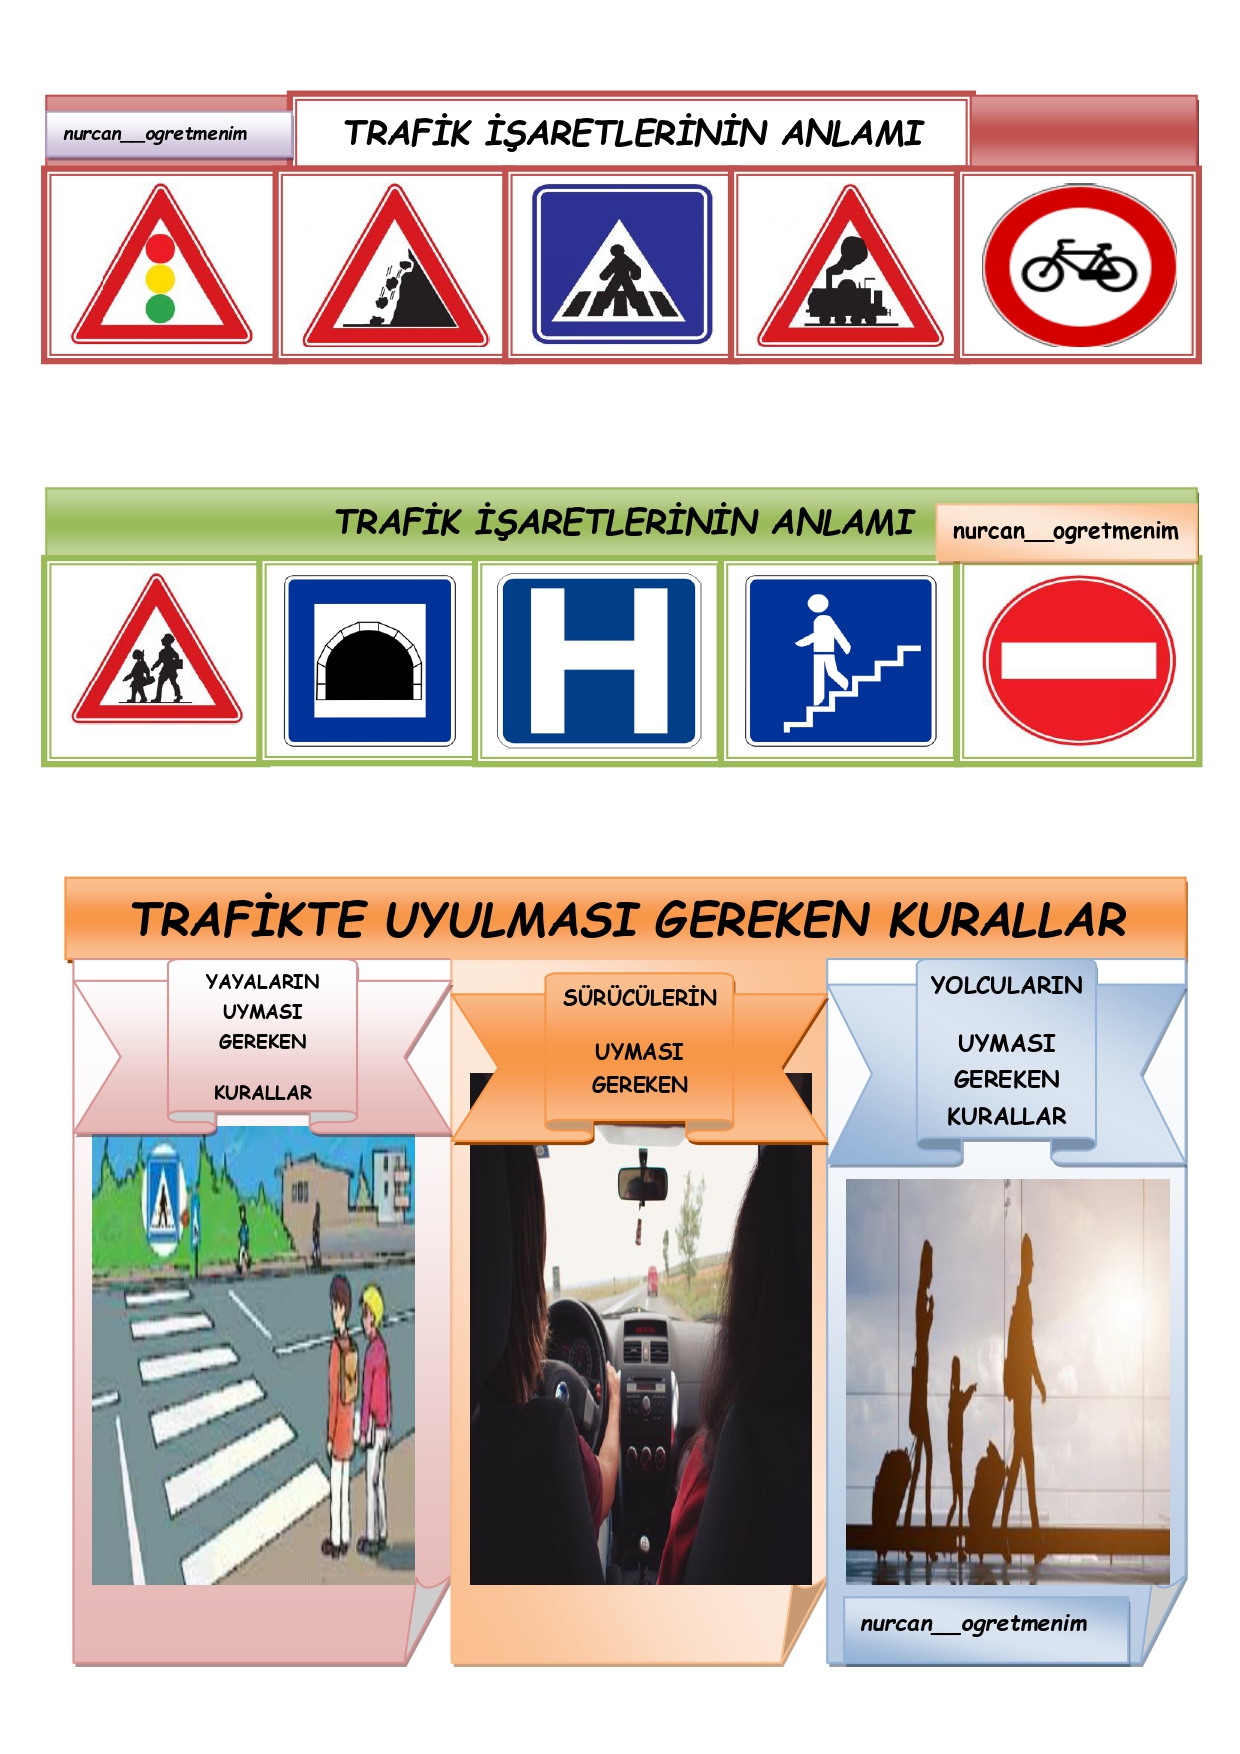 Trafik işaretlerinin anlamı ve trafikte uyulması gereken kurallar